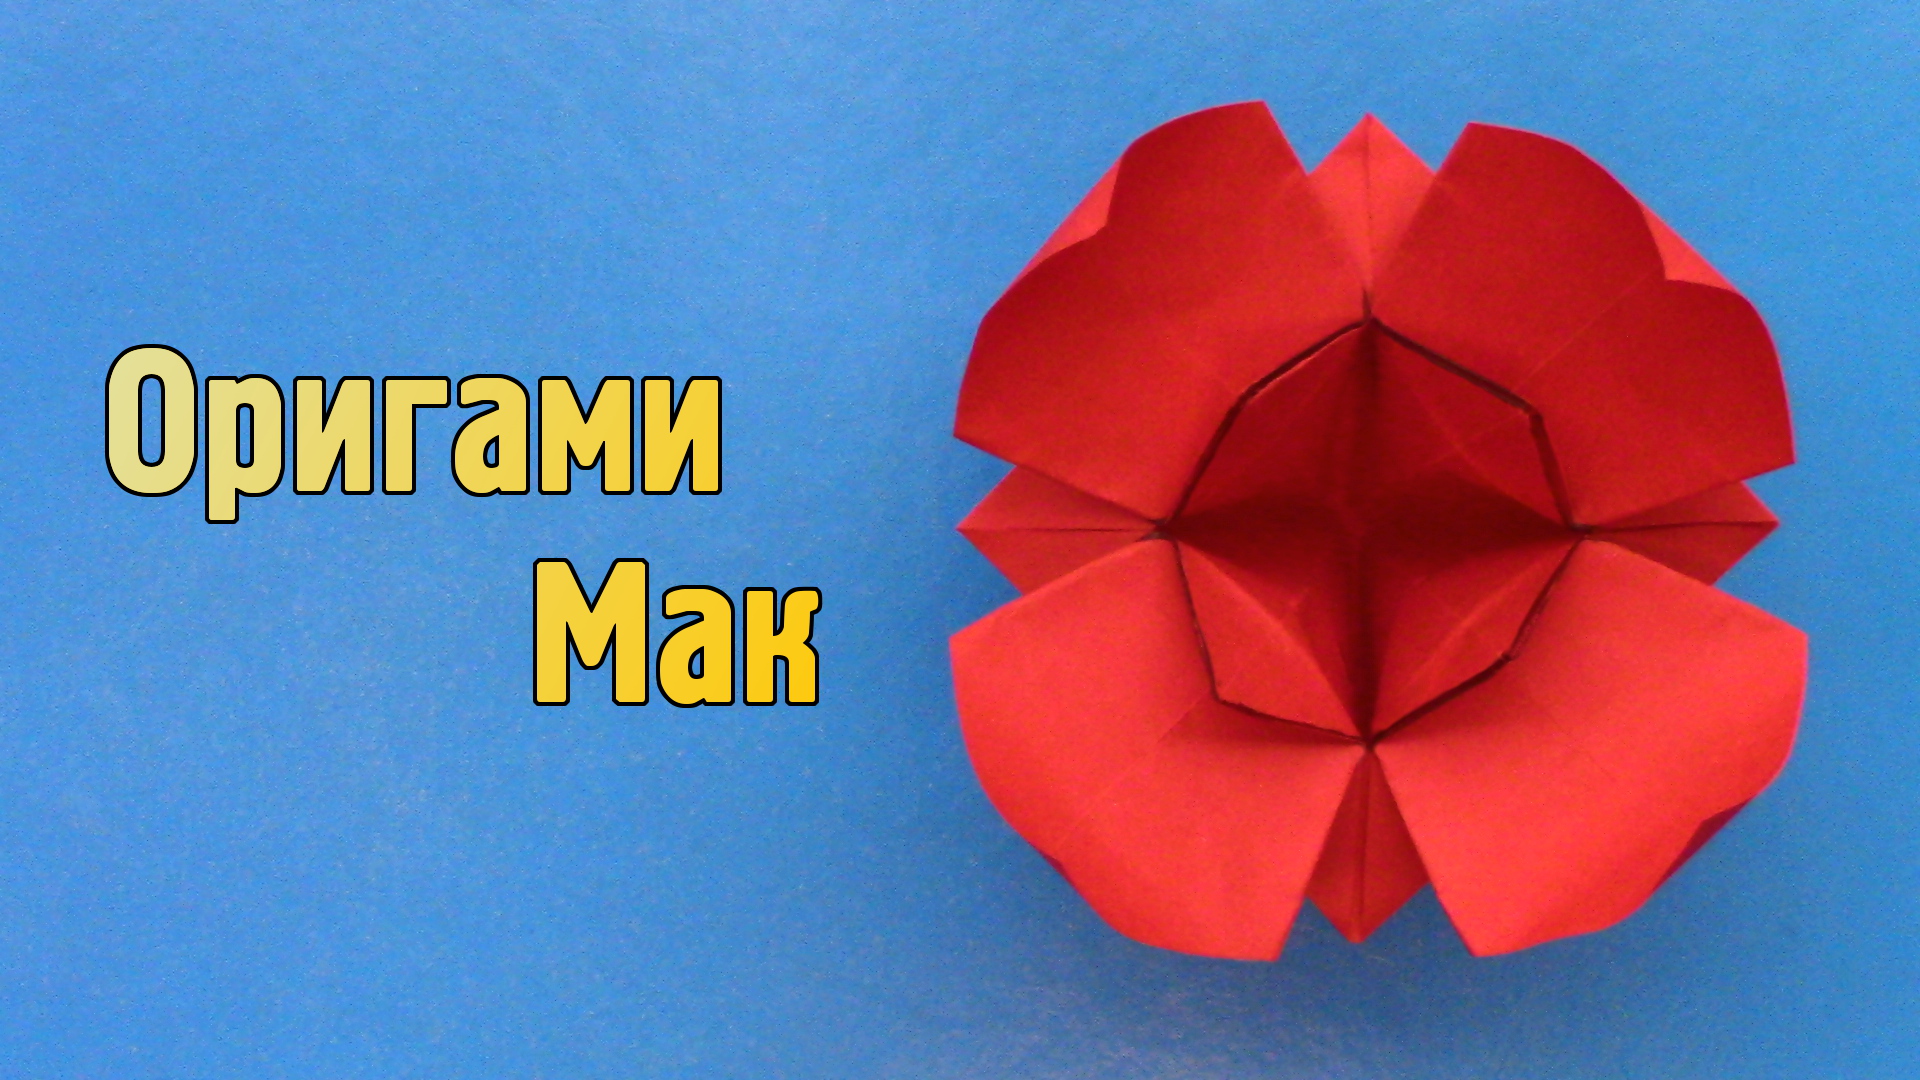 Как сделать Мак из бумаги своими руками | Оригами Мак без клея | Сложный объемный Цветок для детей